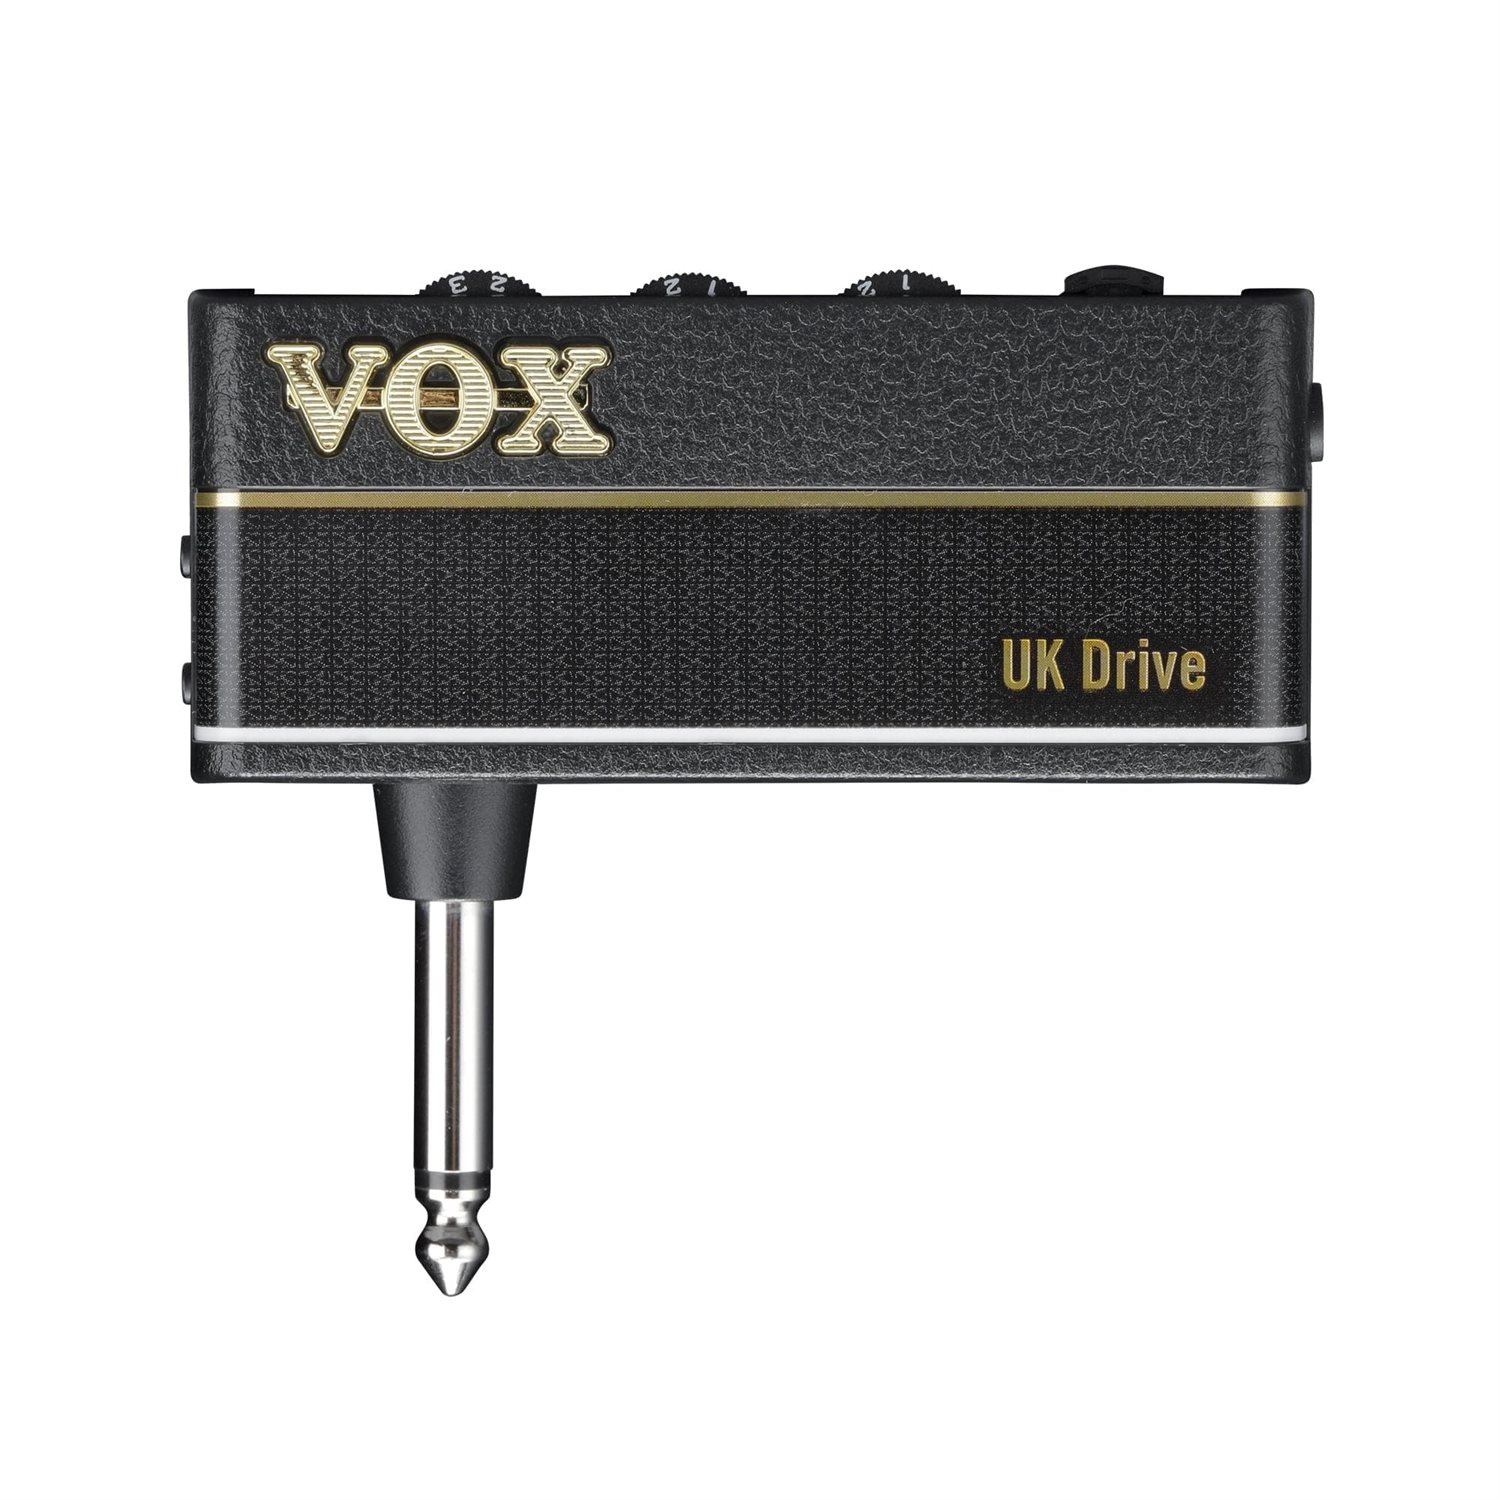 VOX - UK Drive - Ampli pour écouteur AmPlug3